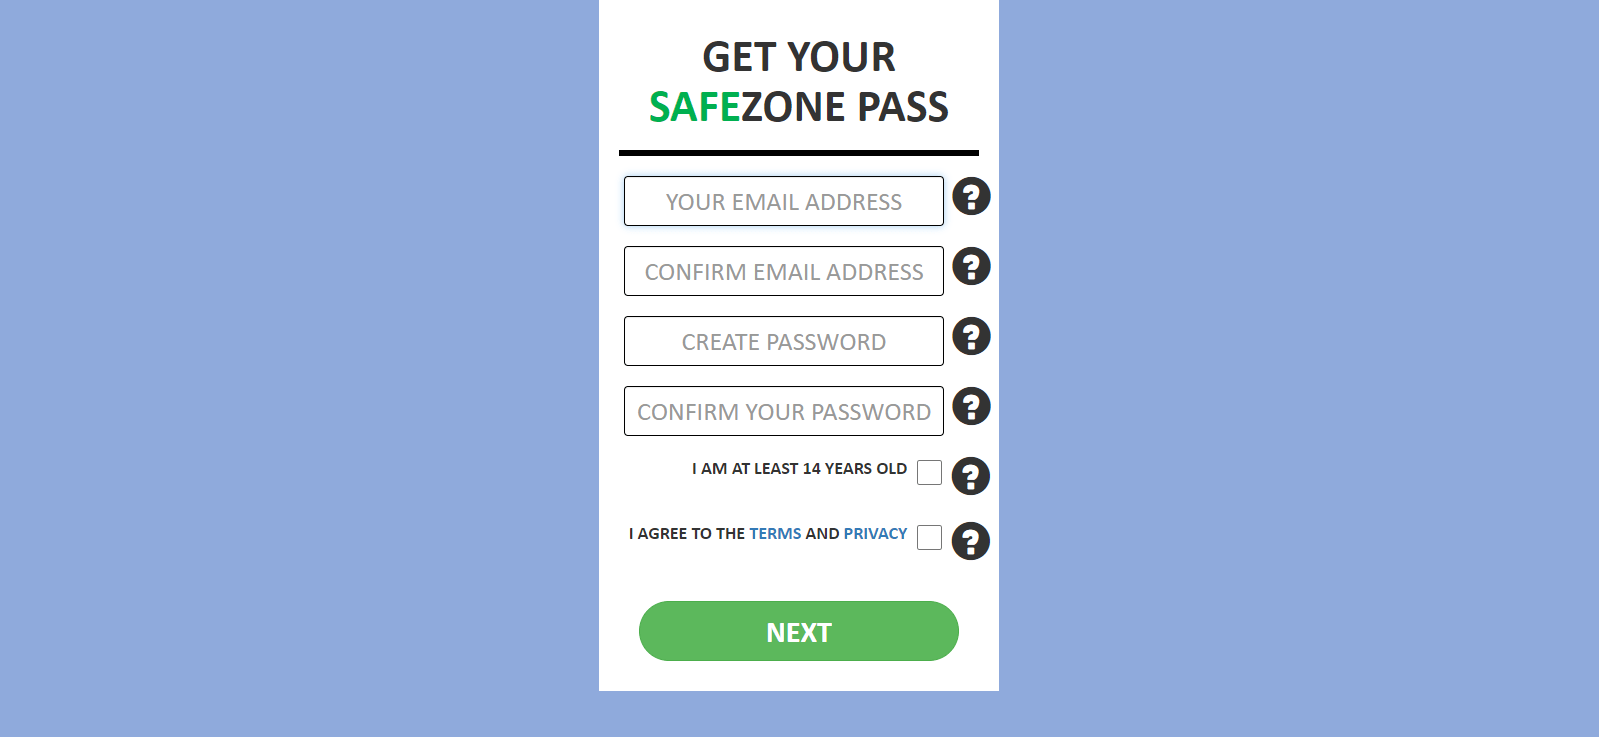 SafeZone Pass